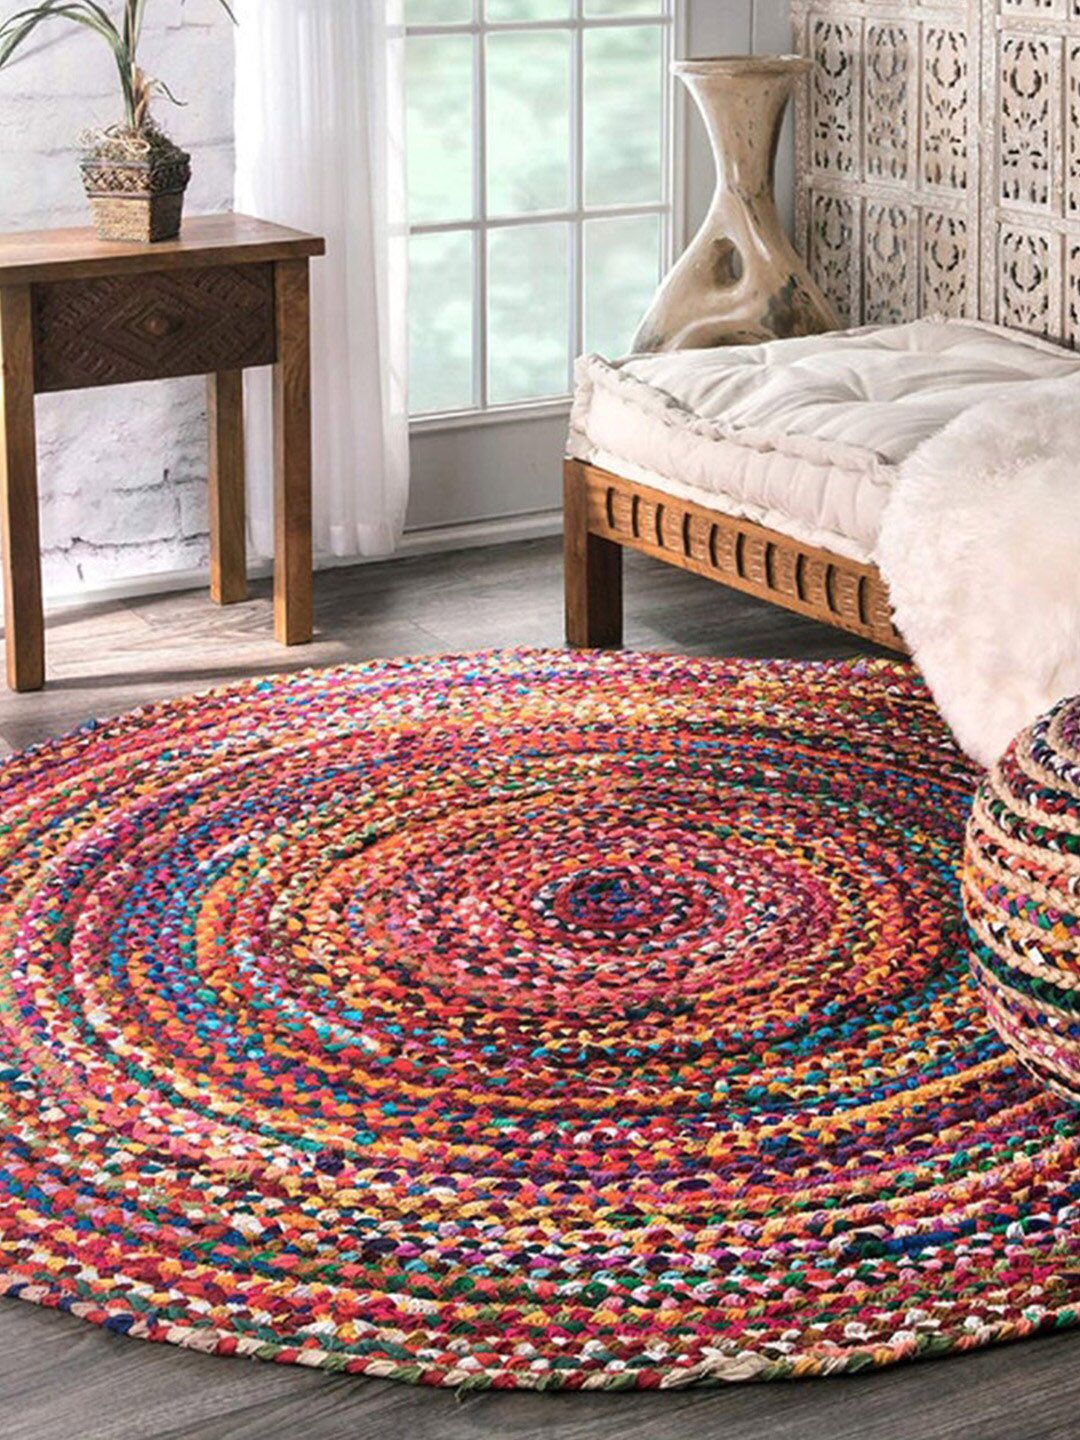 HABERE INDIA Multicoloured Jute Woven Design Carpet Price in India